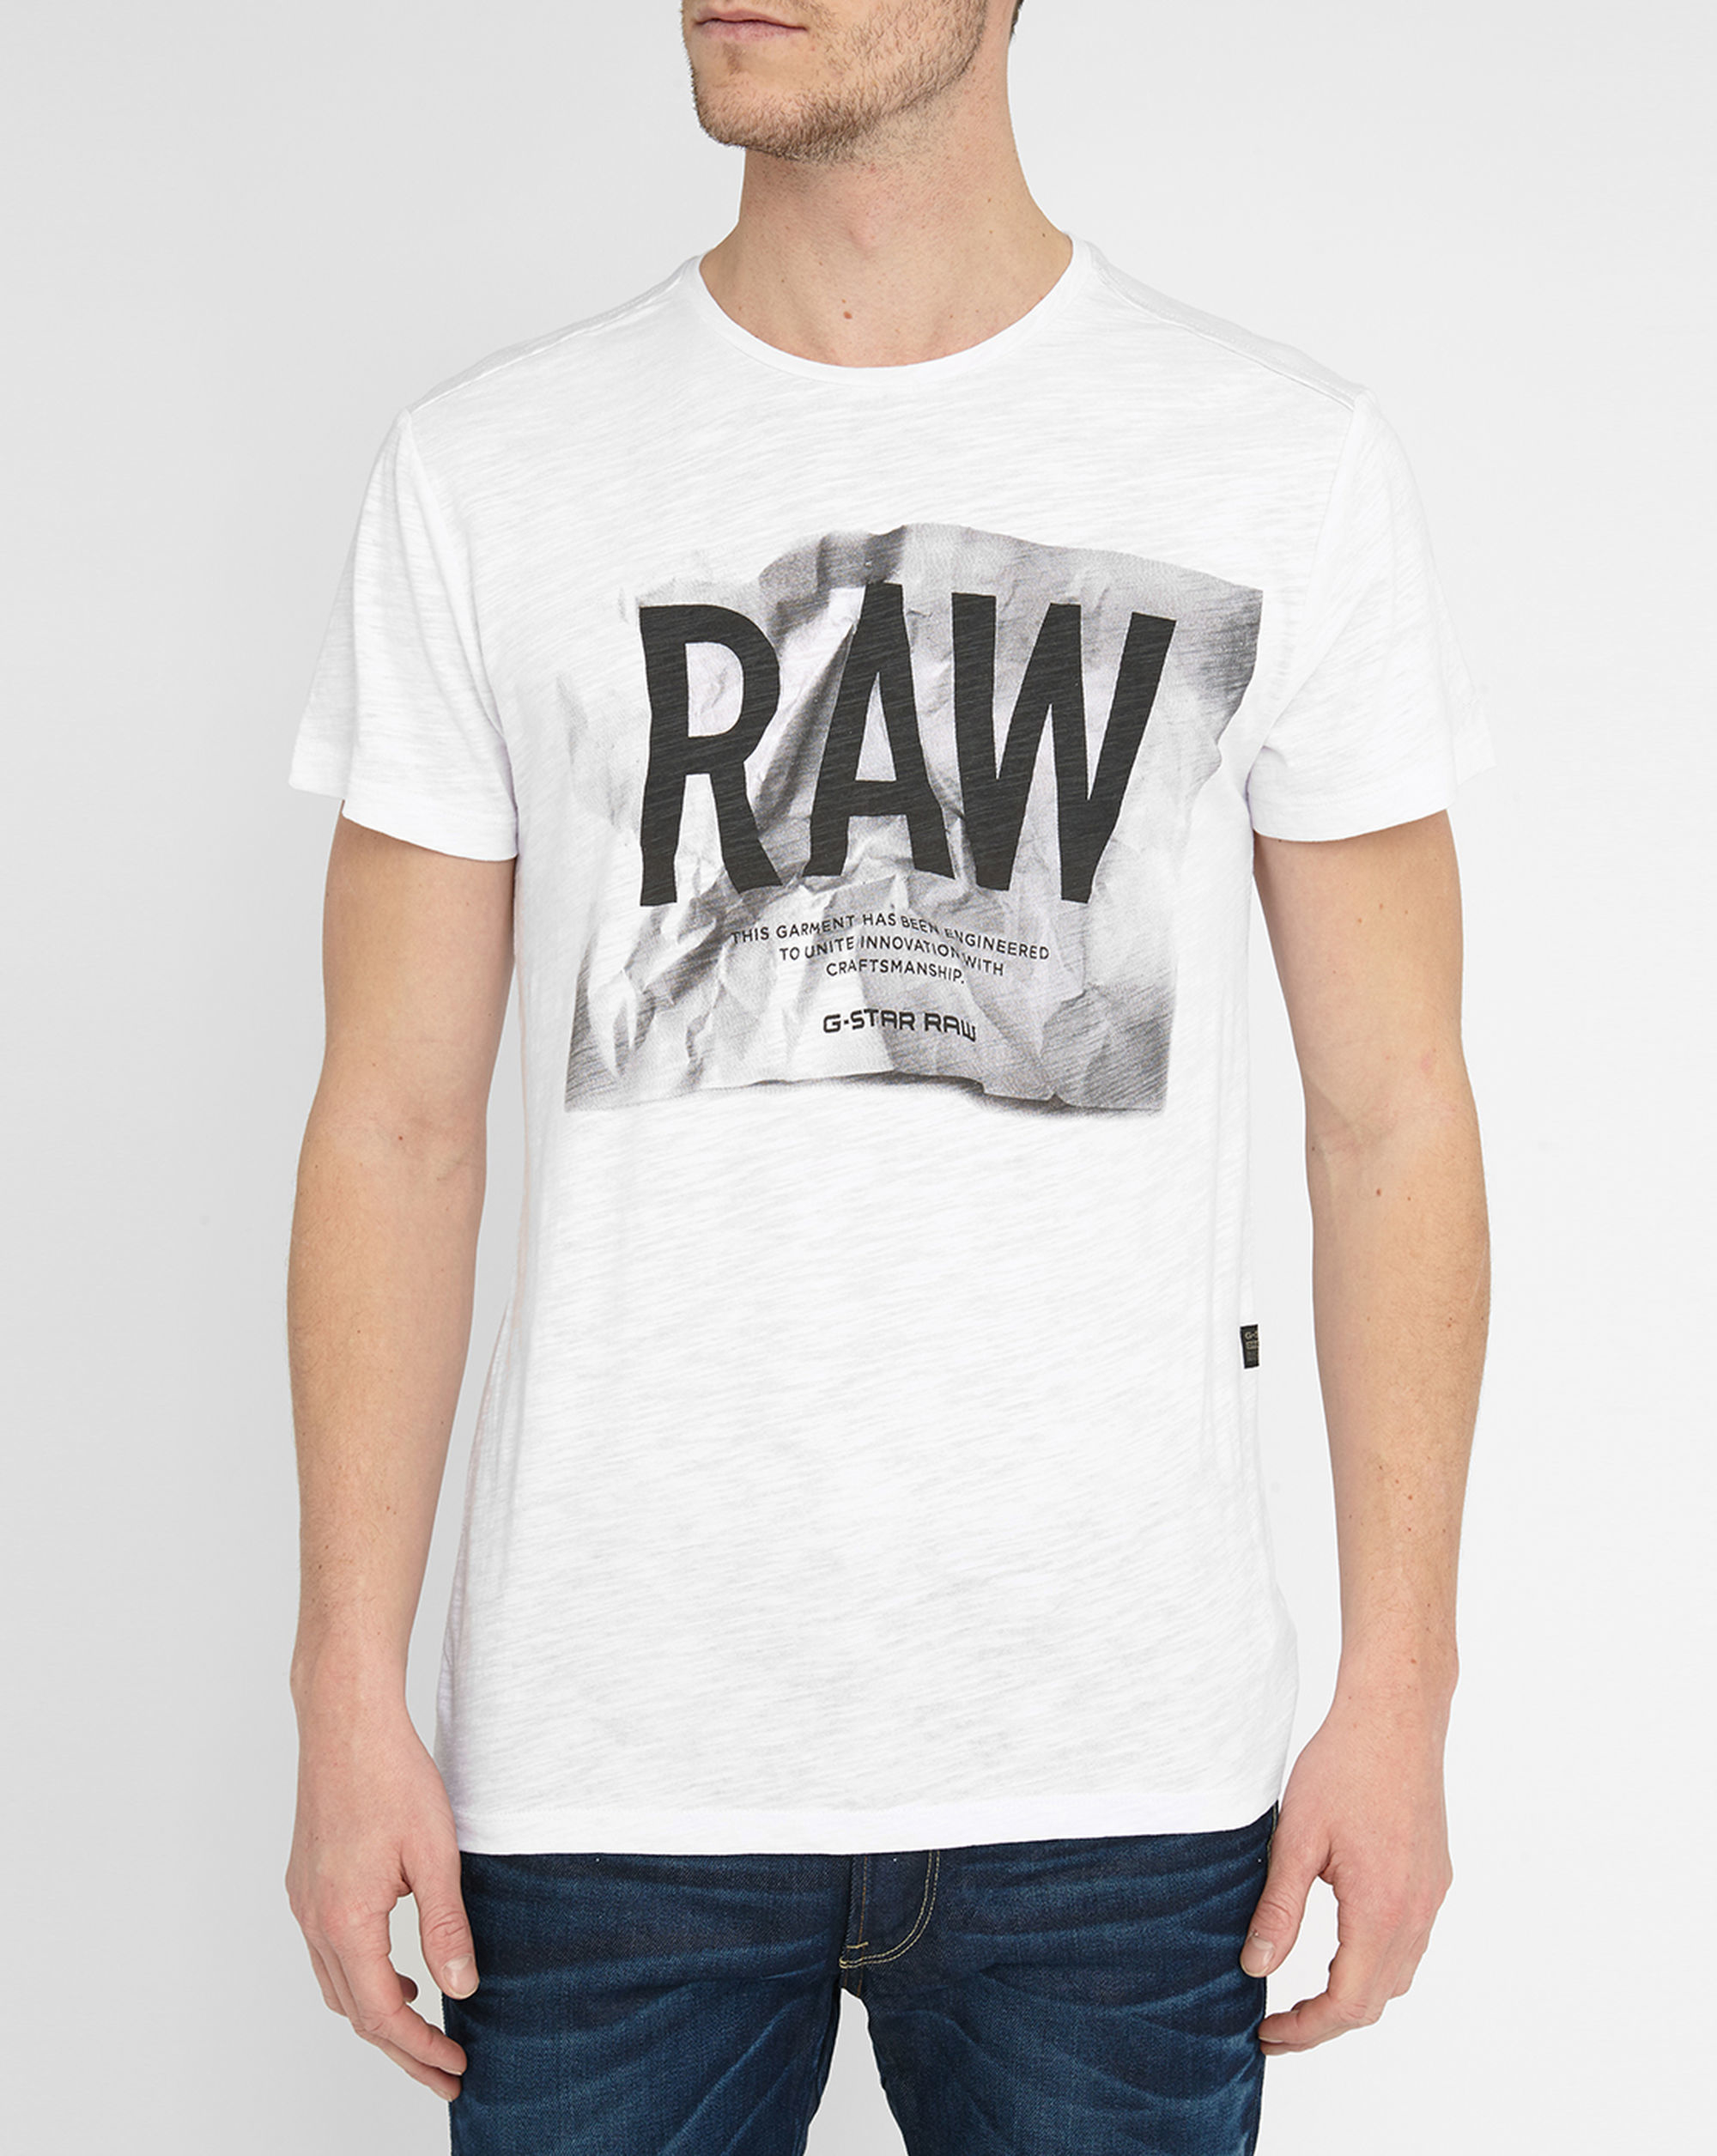 gstar raw glims shirt